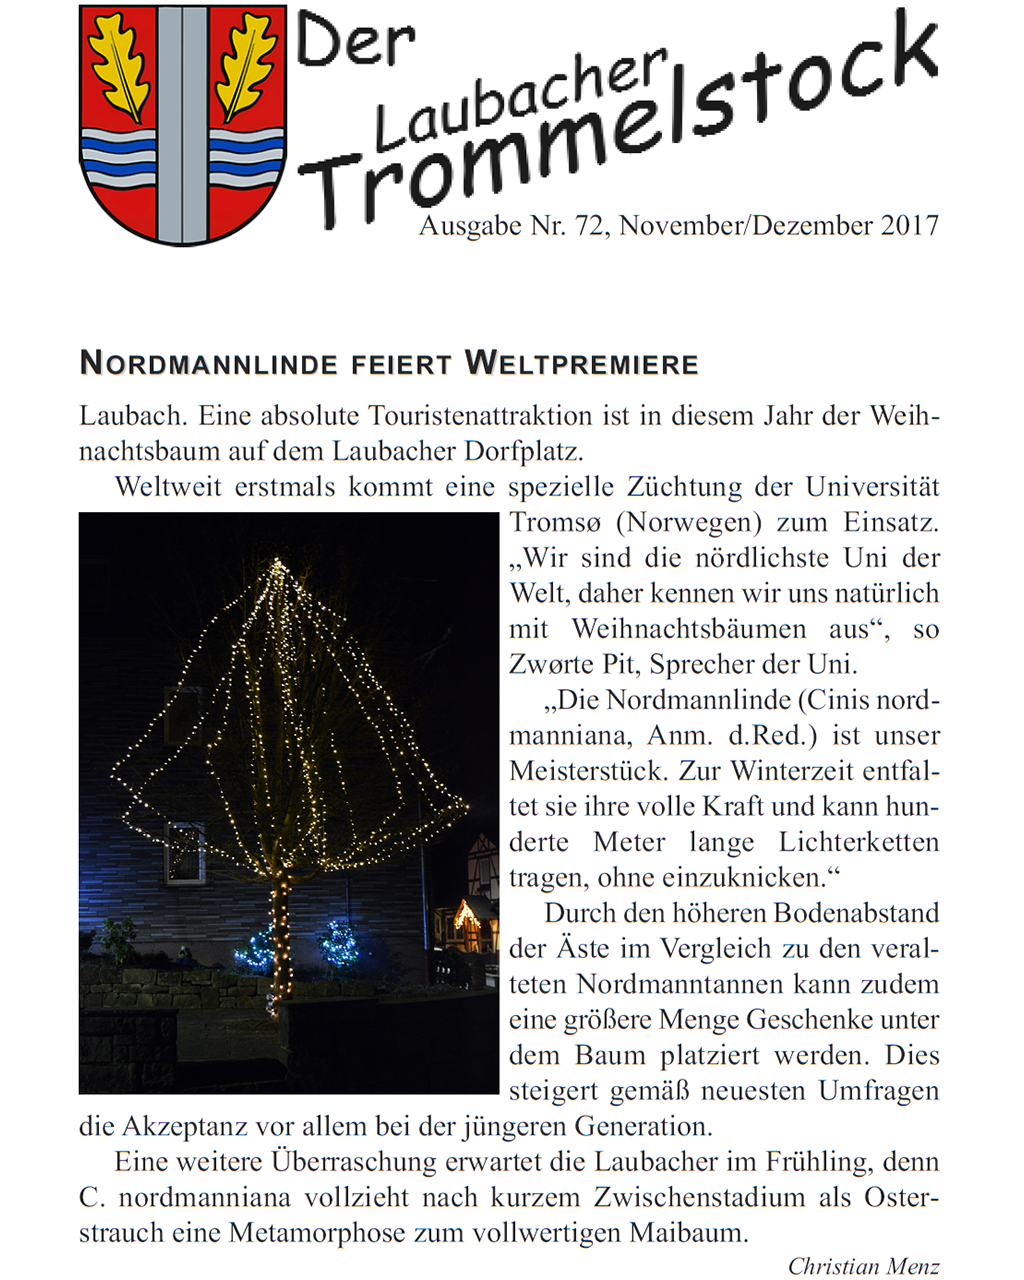 Laubacher-Trommelstock-Titelseite-072